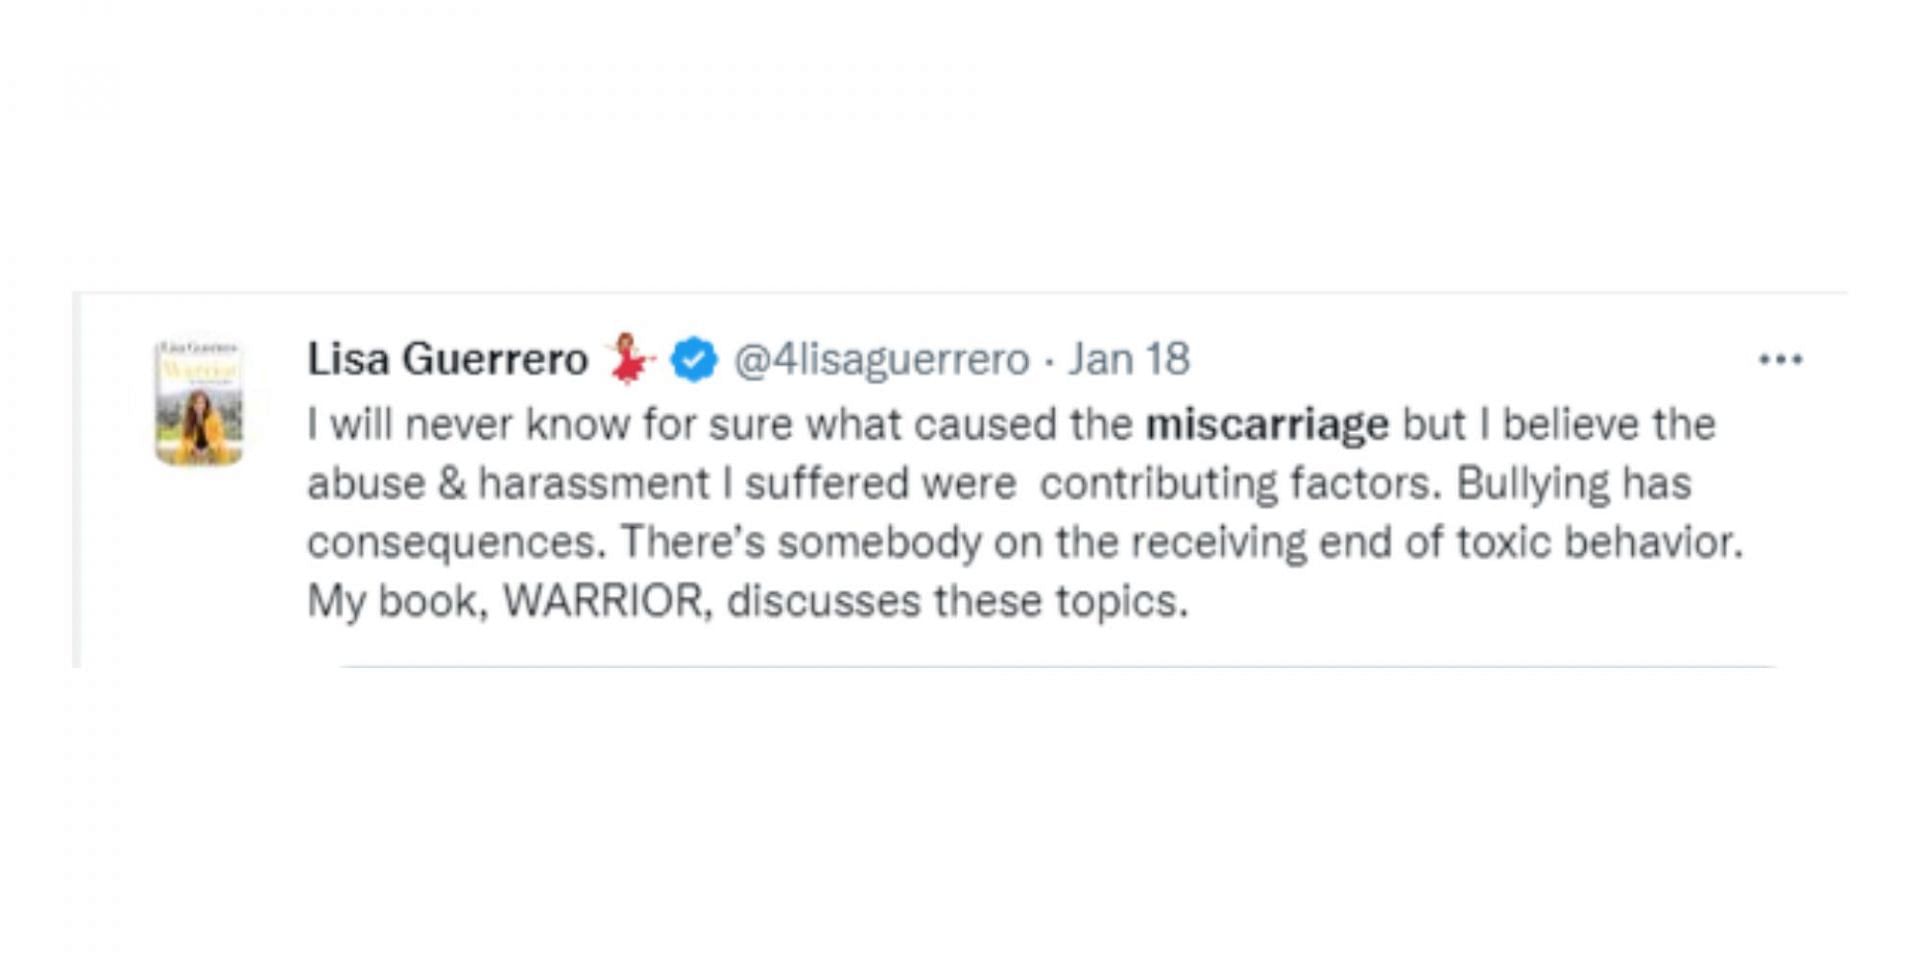 Lisa Guerrero tweets about discussing her miscarriage in her book (Image via Twitter/@4lisaguerrero)